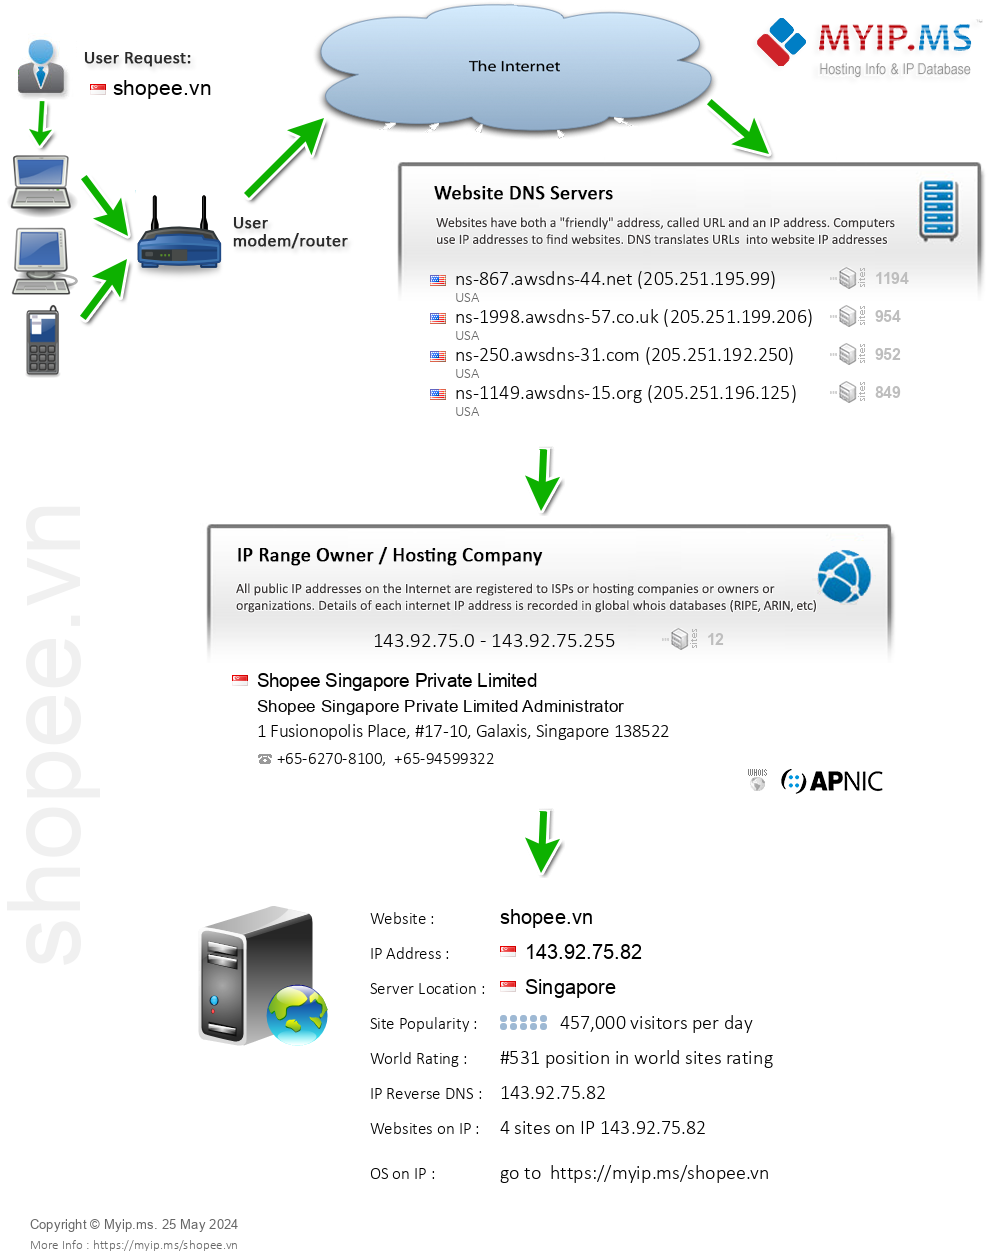 Shopee.vn - Website Hosting Visual IP Diagram